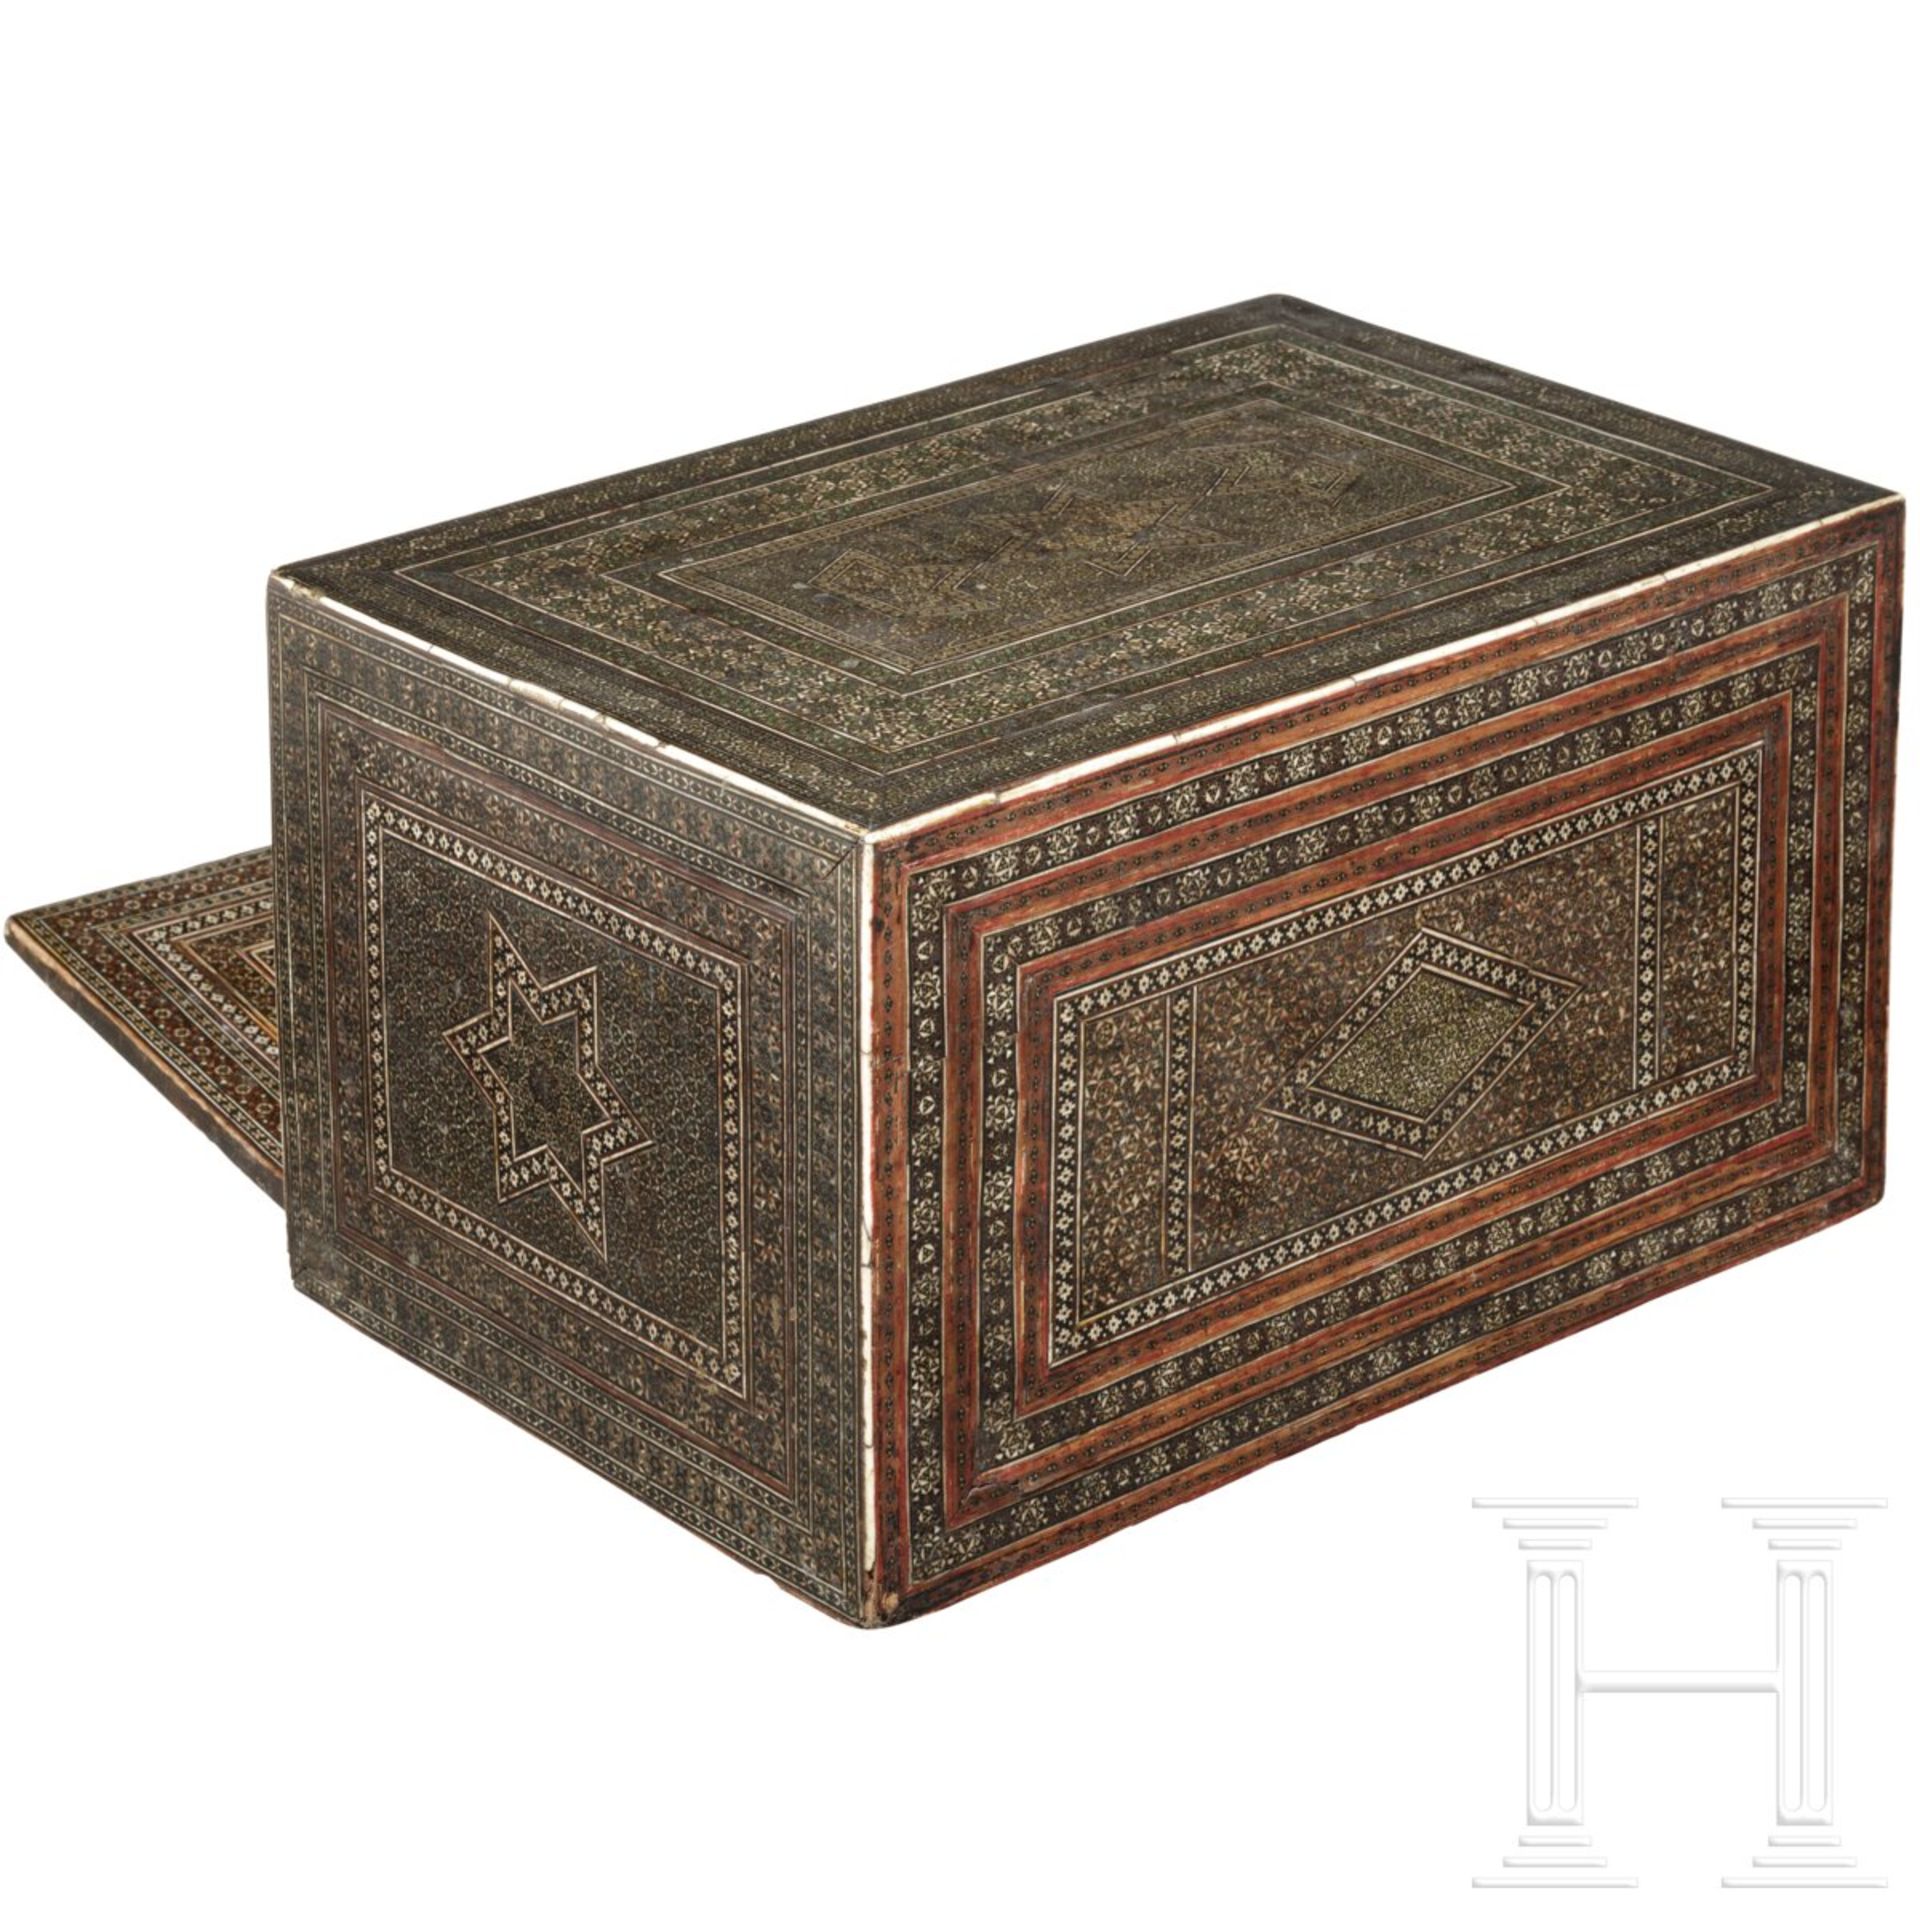 Kabinettkästchen mit reichem Shiras-Dekor, Persien, 1. Hälfte 19. Jhdt. - Image 3 of 5